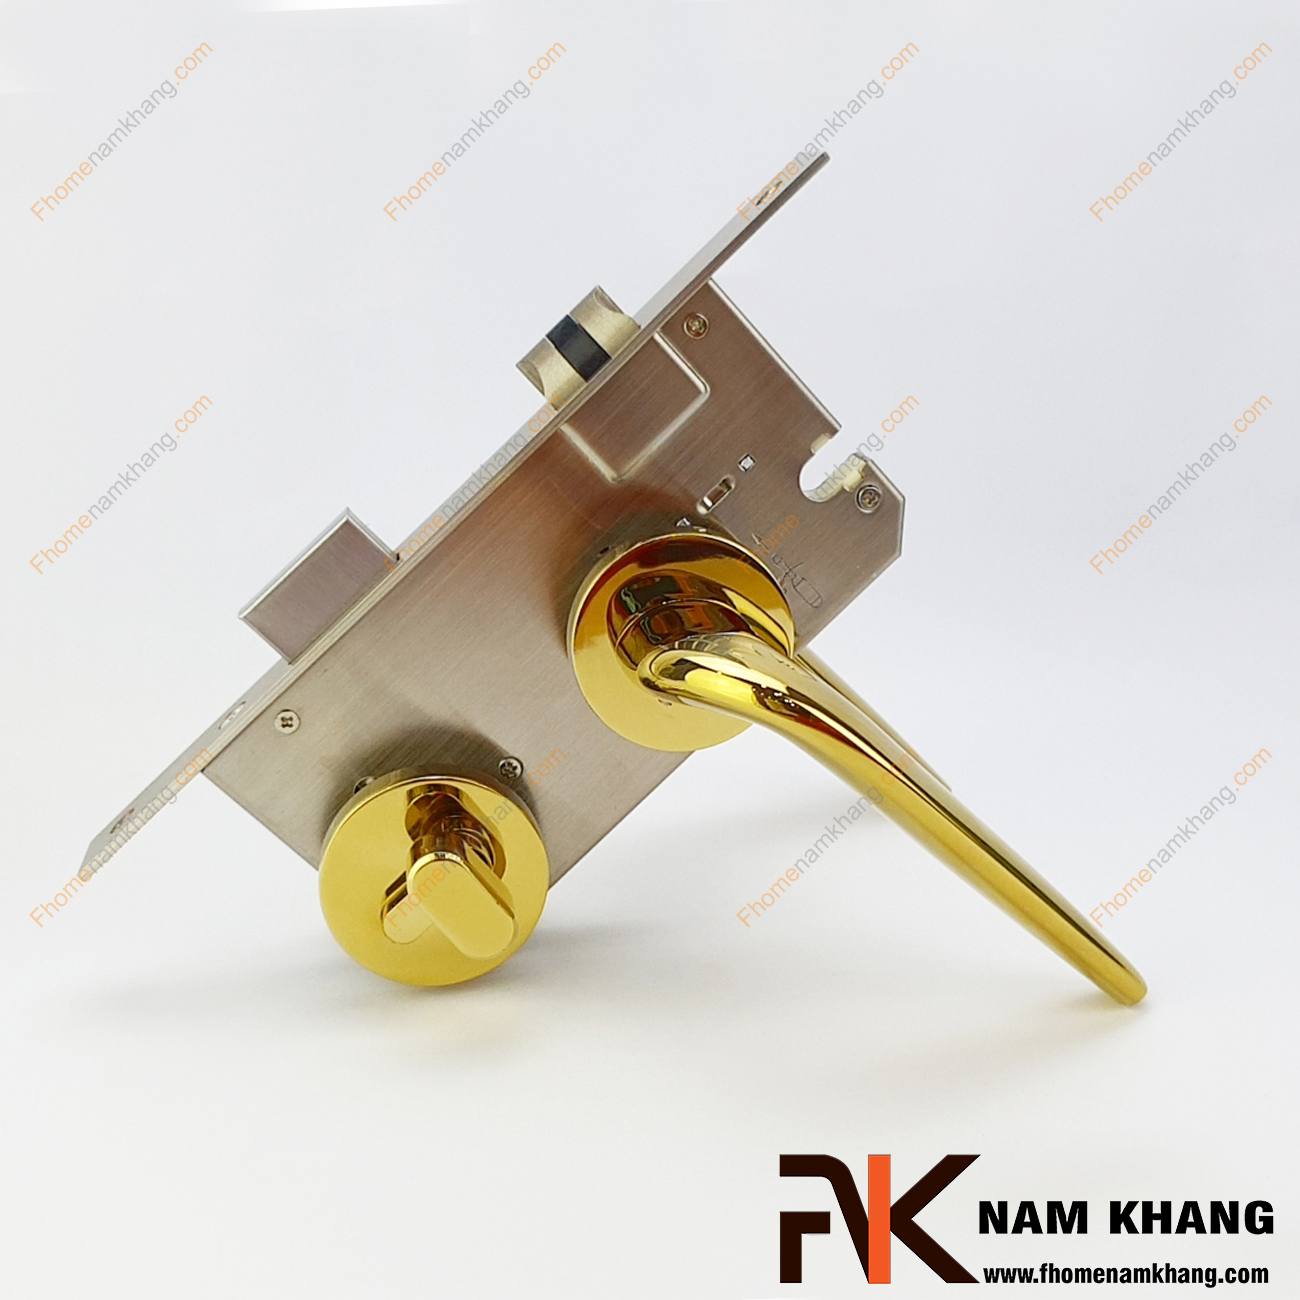 Khóa cửa phân thể hiện đại màu vàng bóng NK574-PVD có thiết kế đơn giản, nhỏ gọn và phần ốp khóa, tay gạt riêng biệt, tạo được sự nổi bật độc đáo.